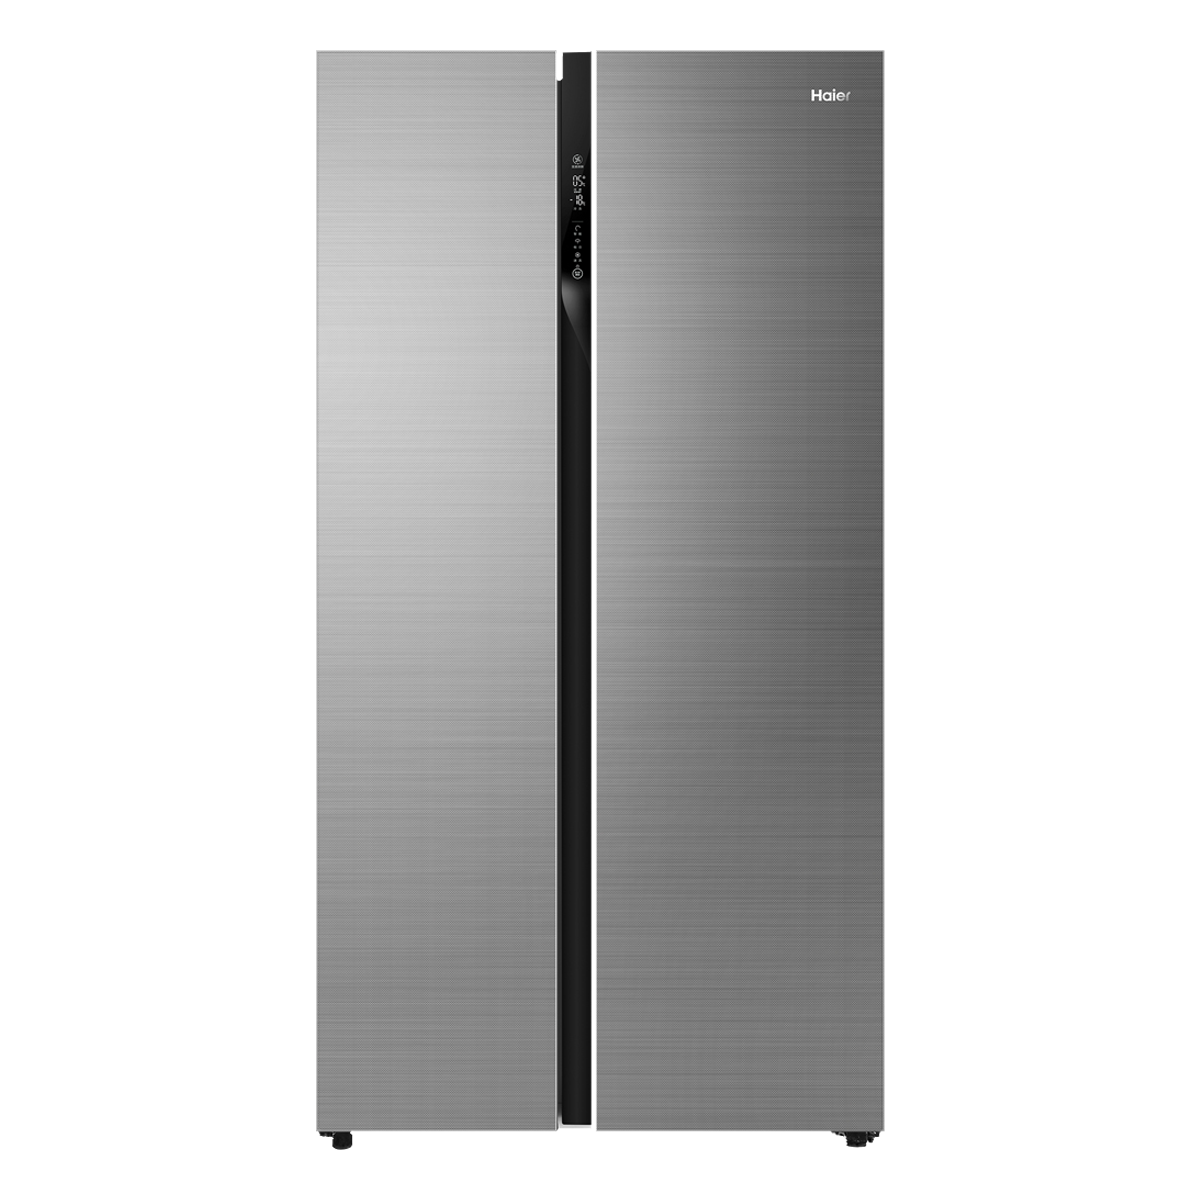 海尔Haier冰箱 BCD-601WDGX 说明书